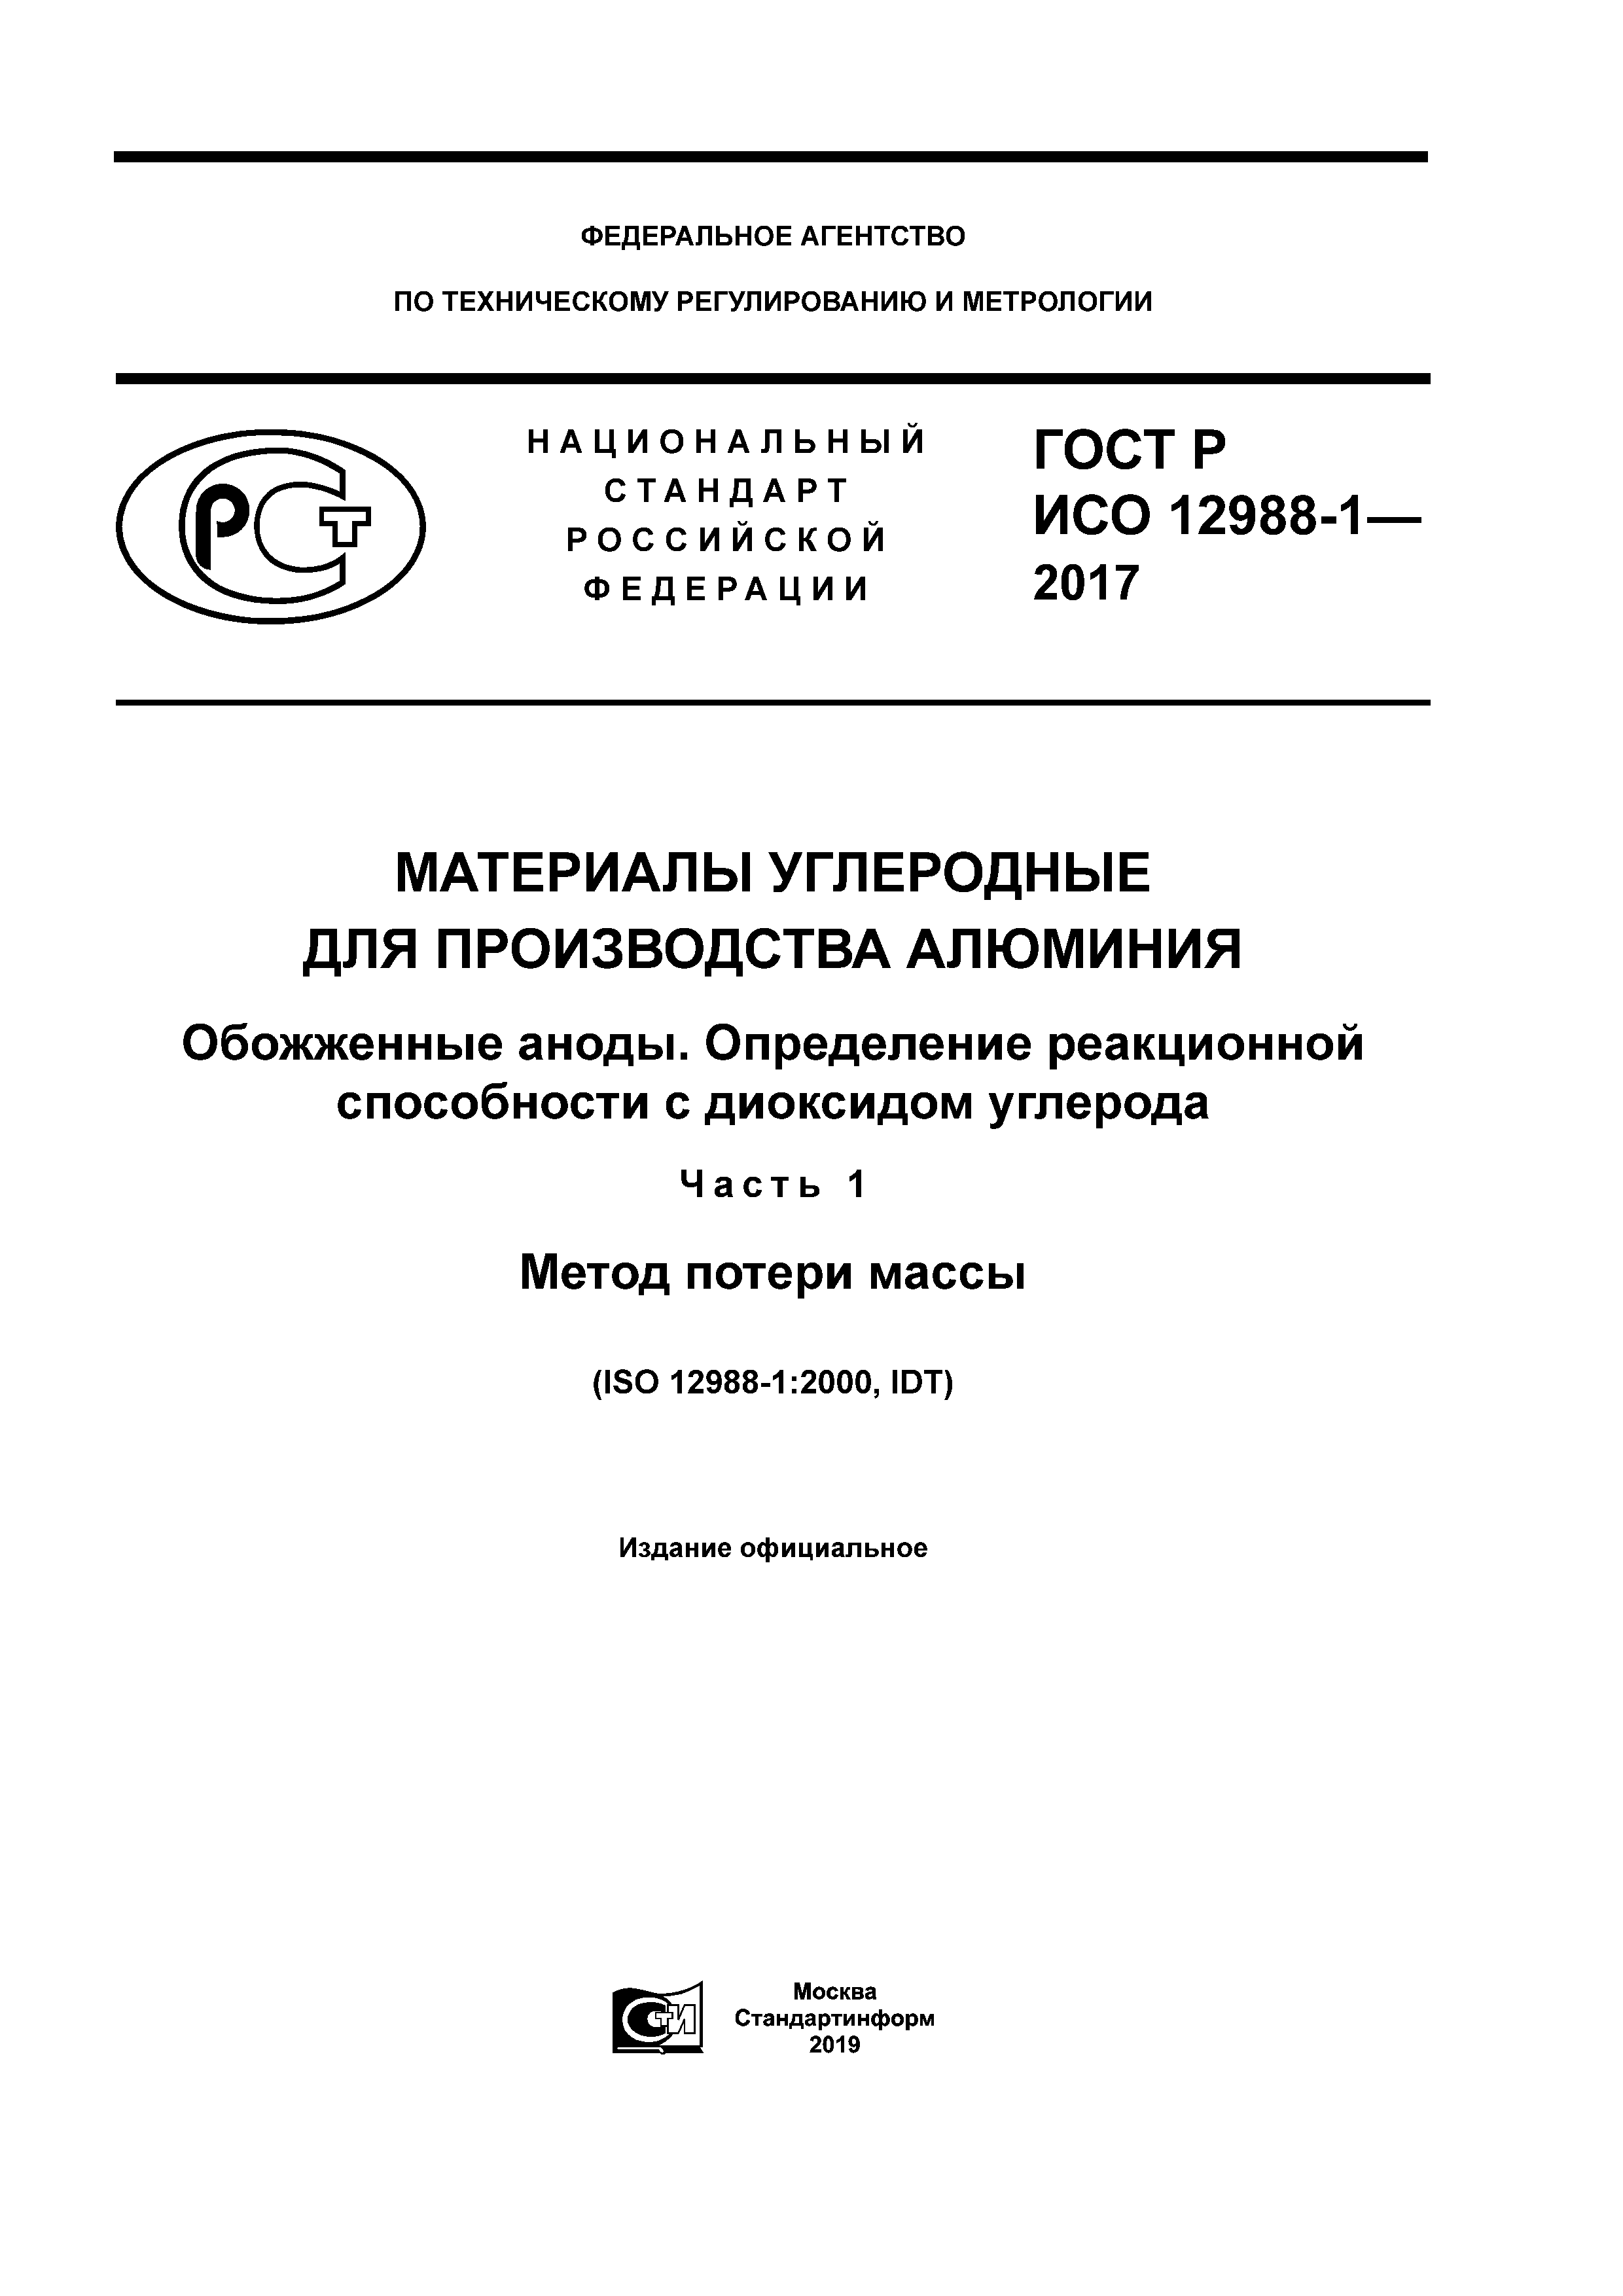 ГОСТ Р ИСО 12988-1-2017